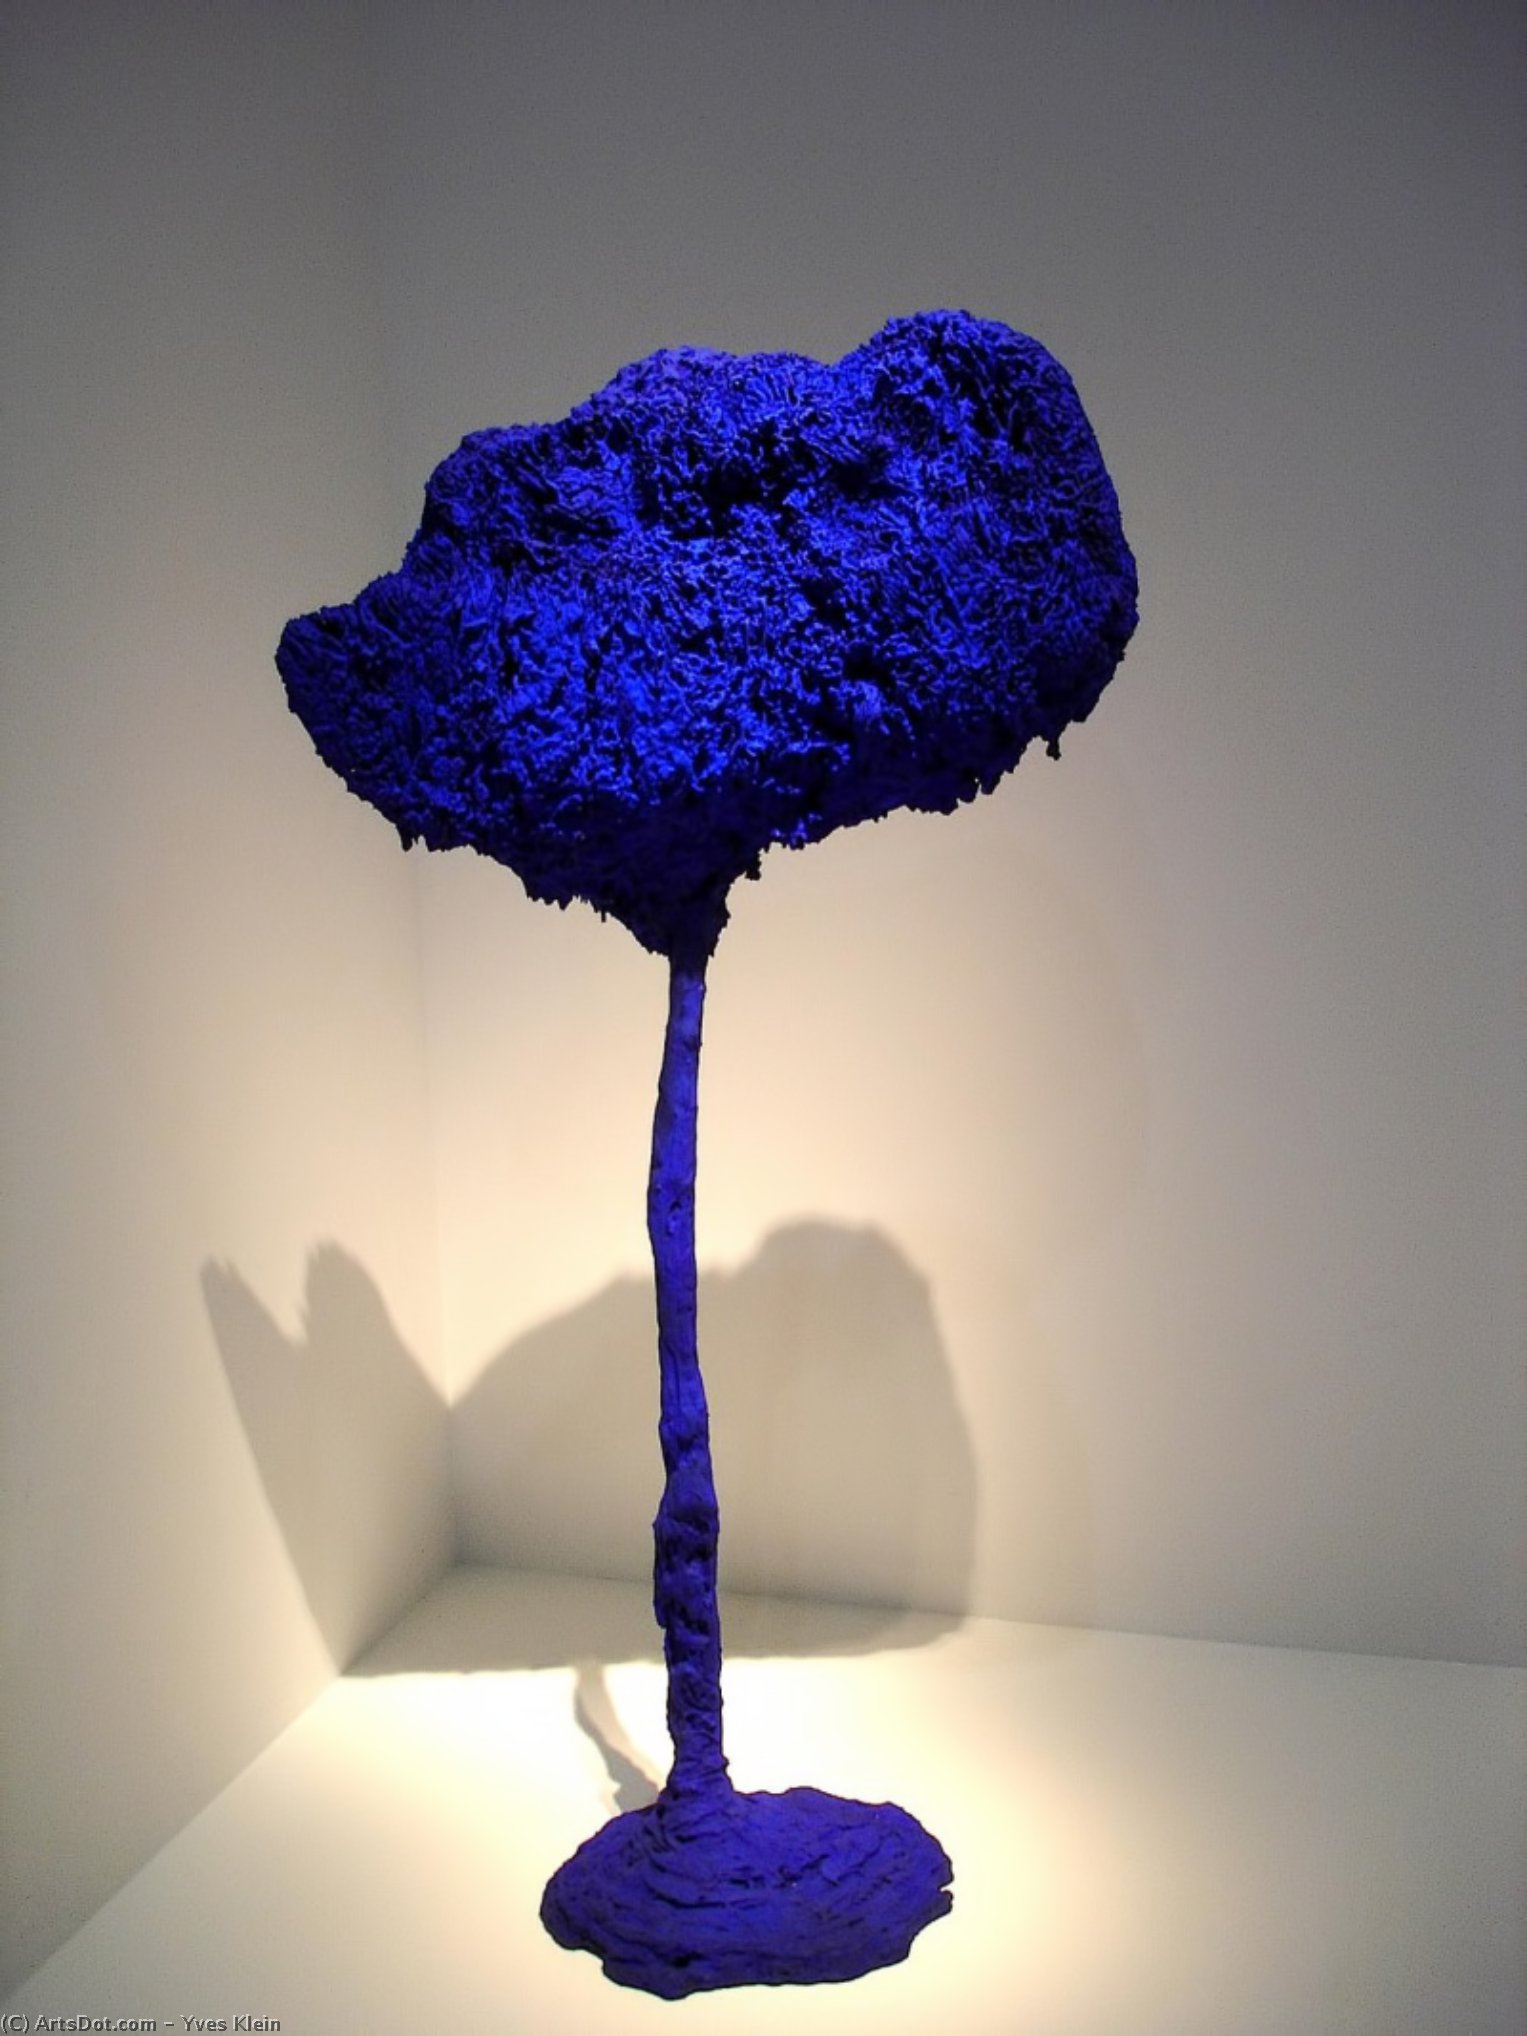 WikiOO.org - Enciclopedia of Fine Arts - Pictura, lucrări de artă Yves Klein - Tree, large blue sponge